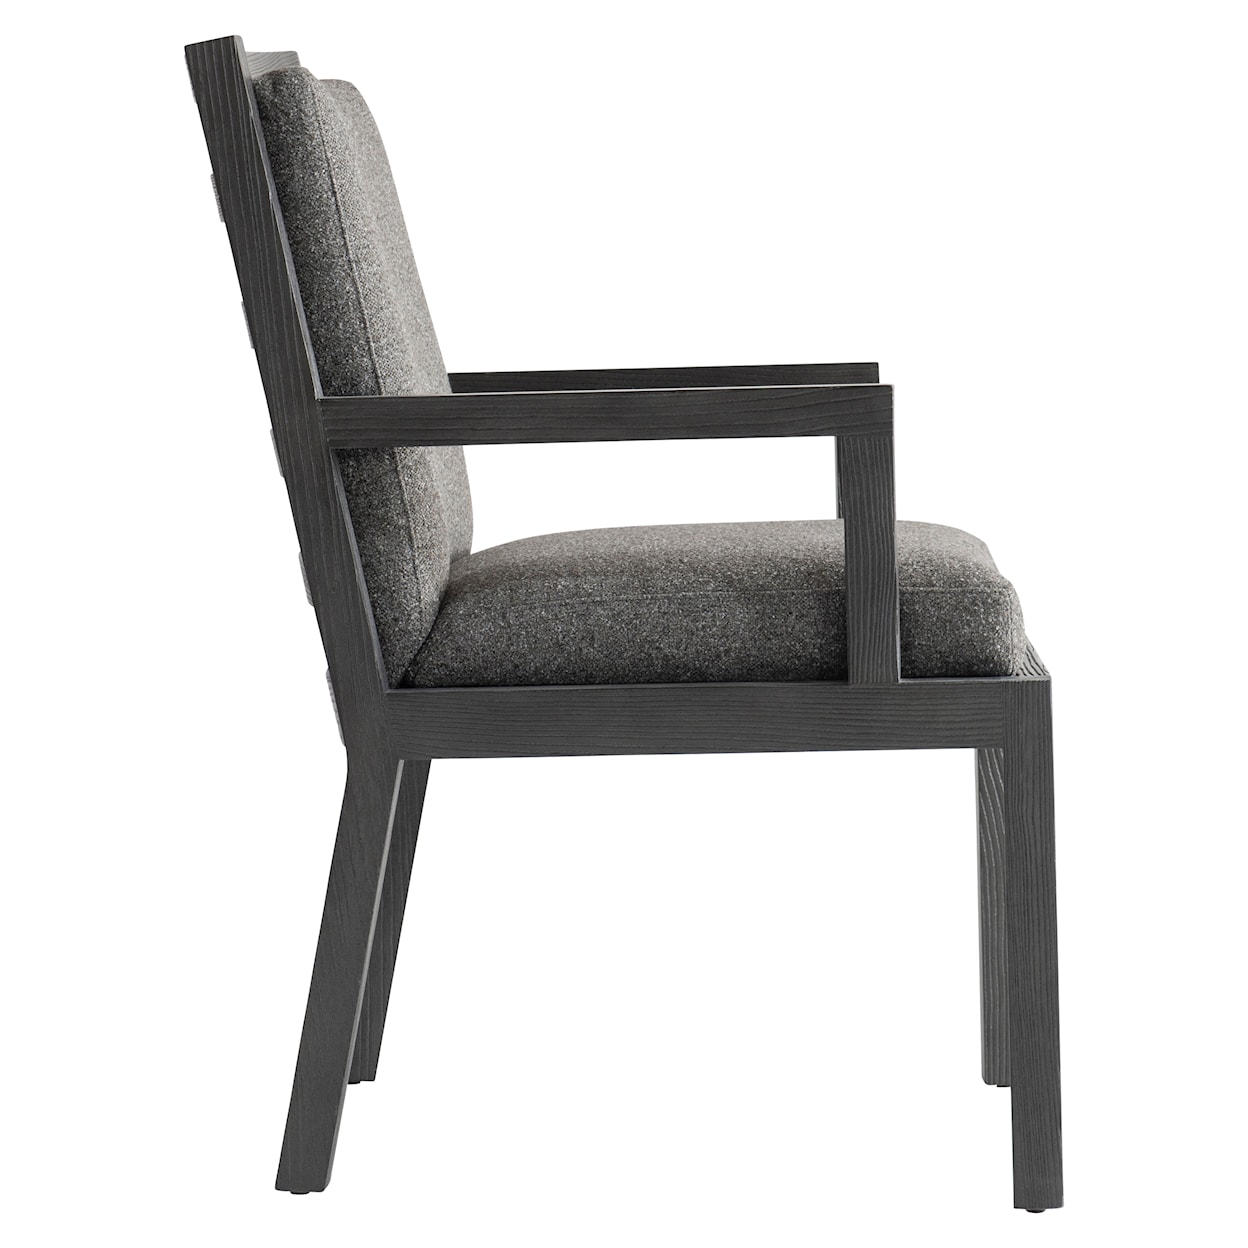 Bernhardt Trianon Arm Chair